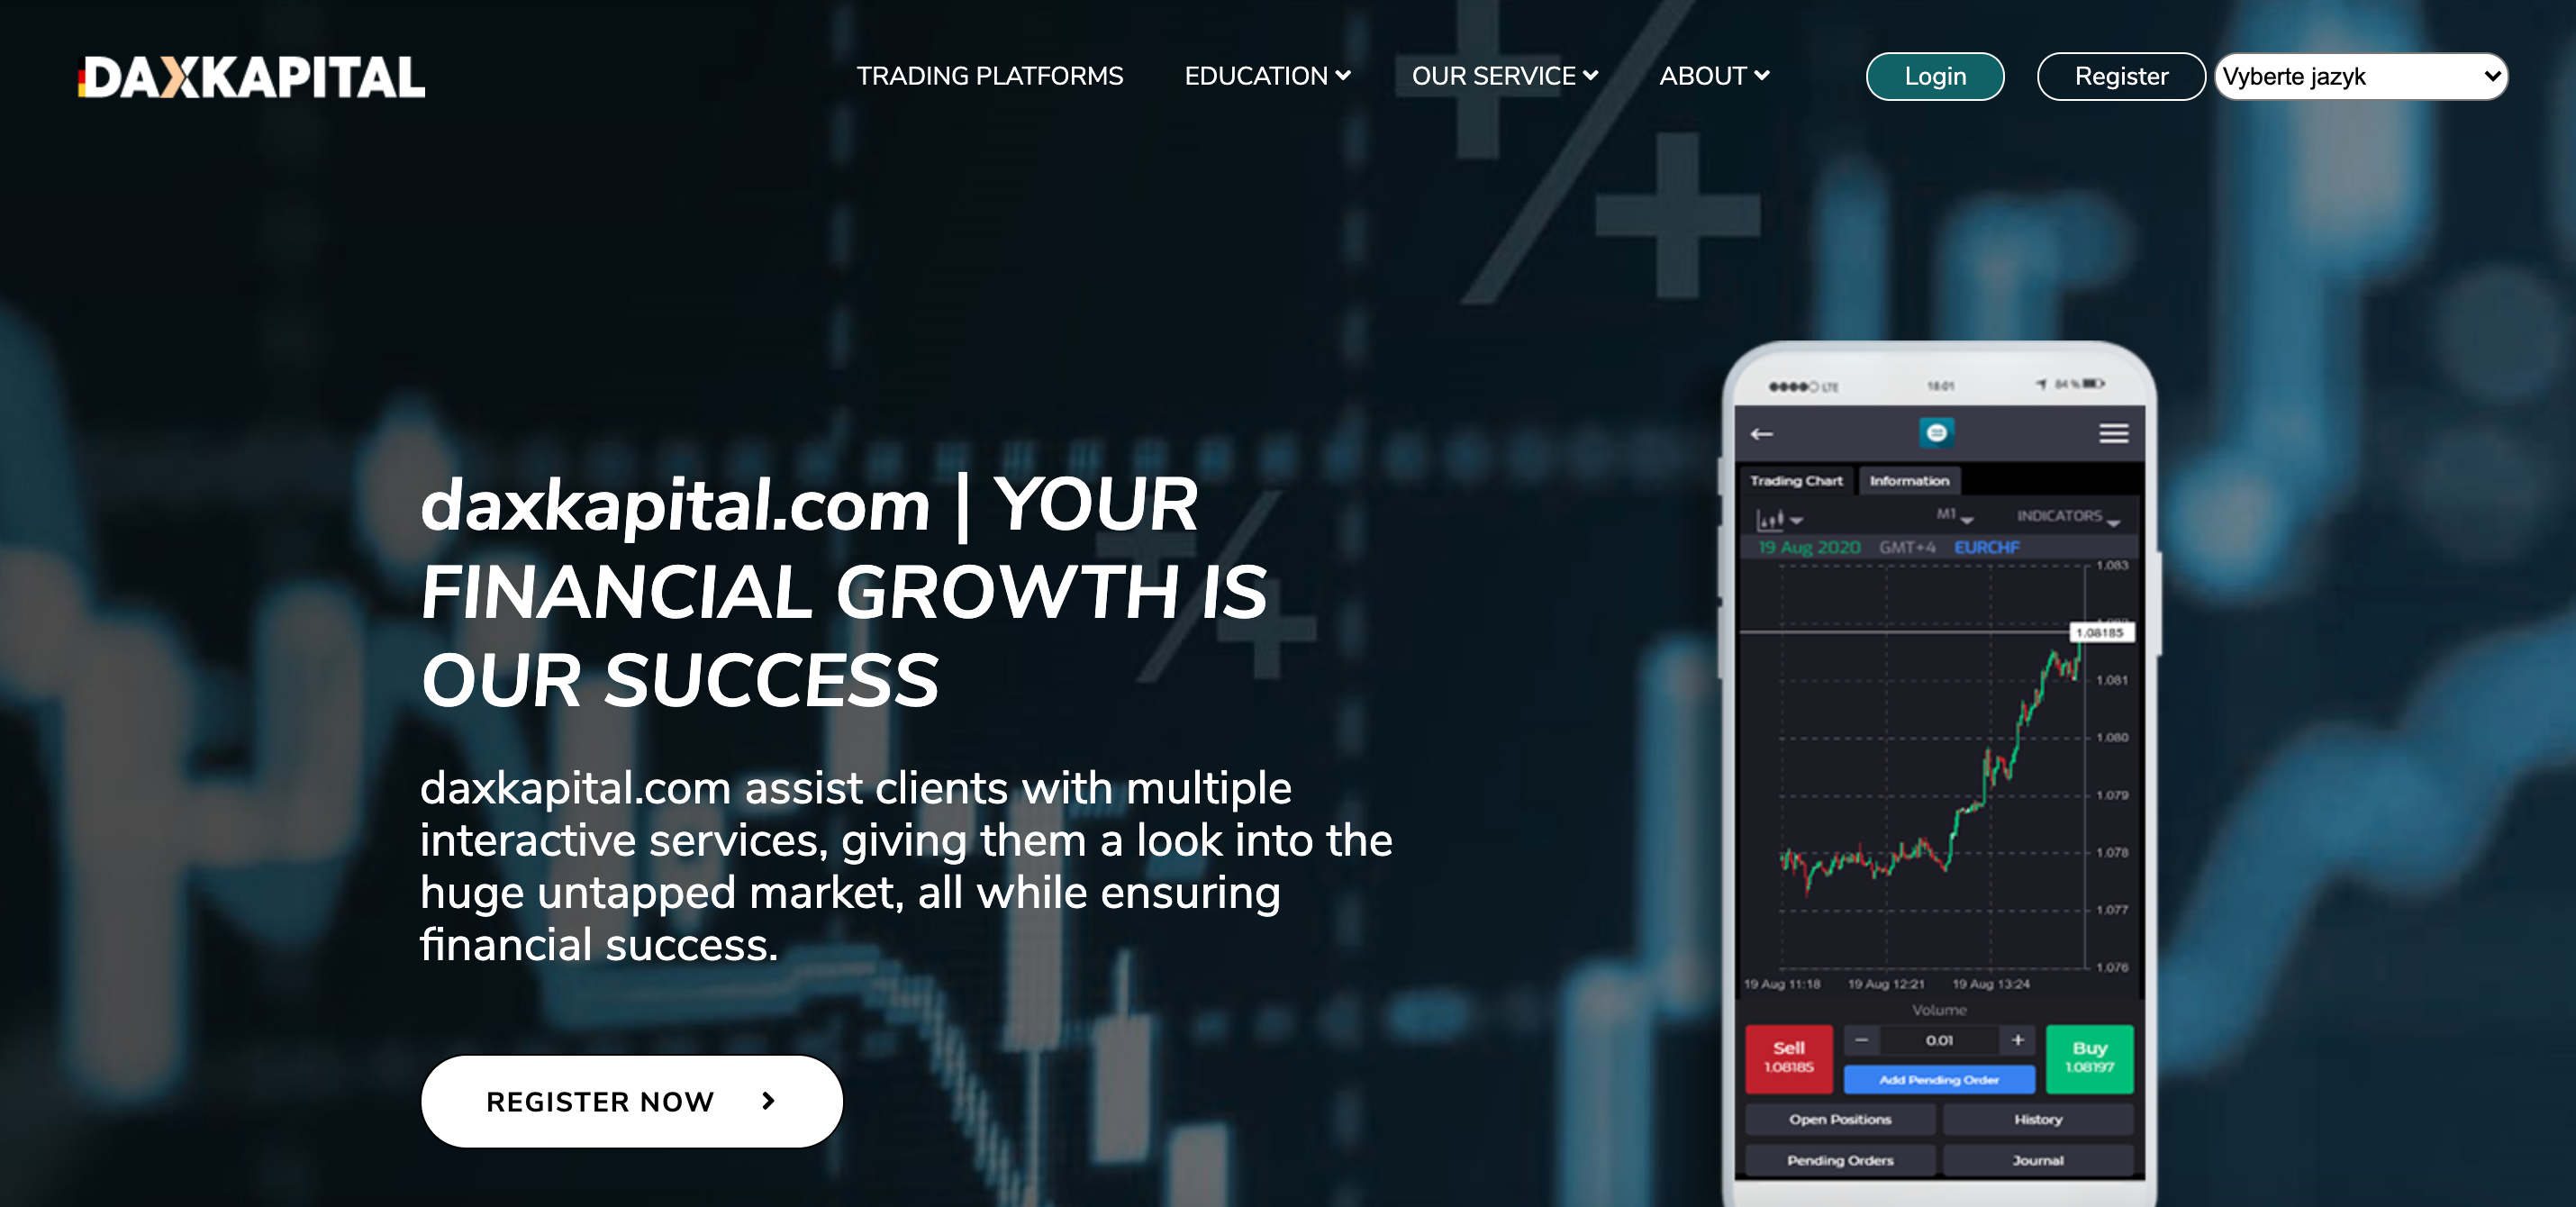 DAX Kapital website